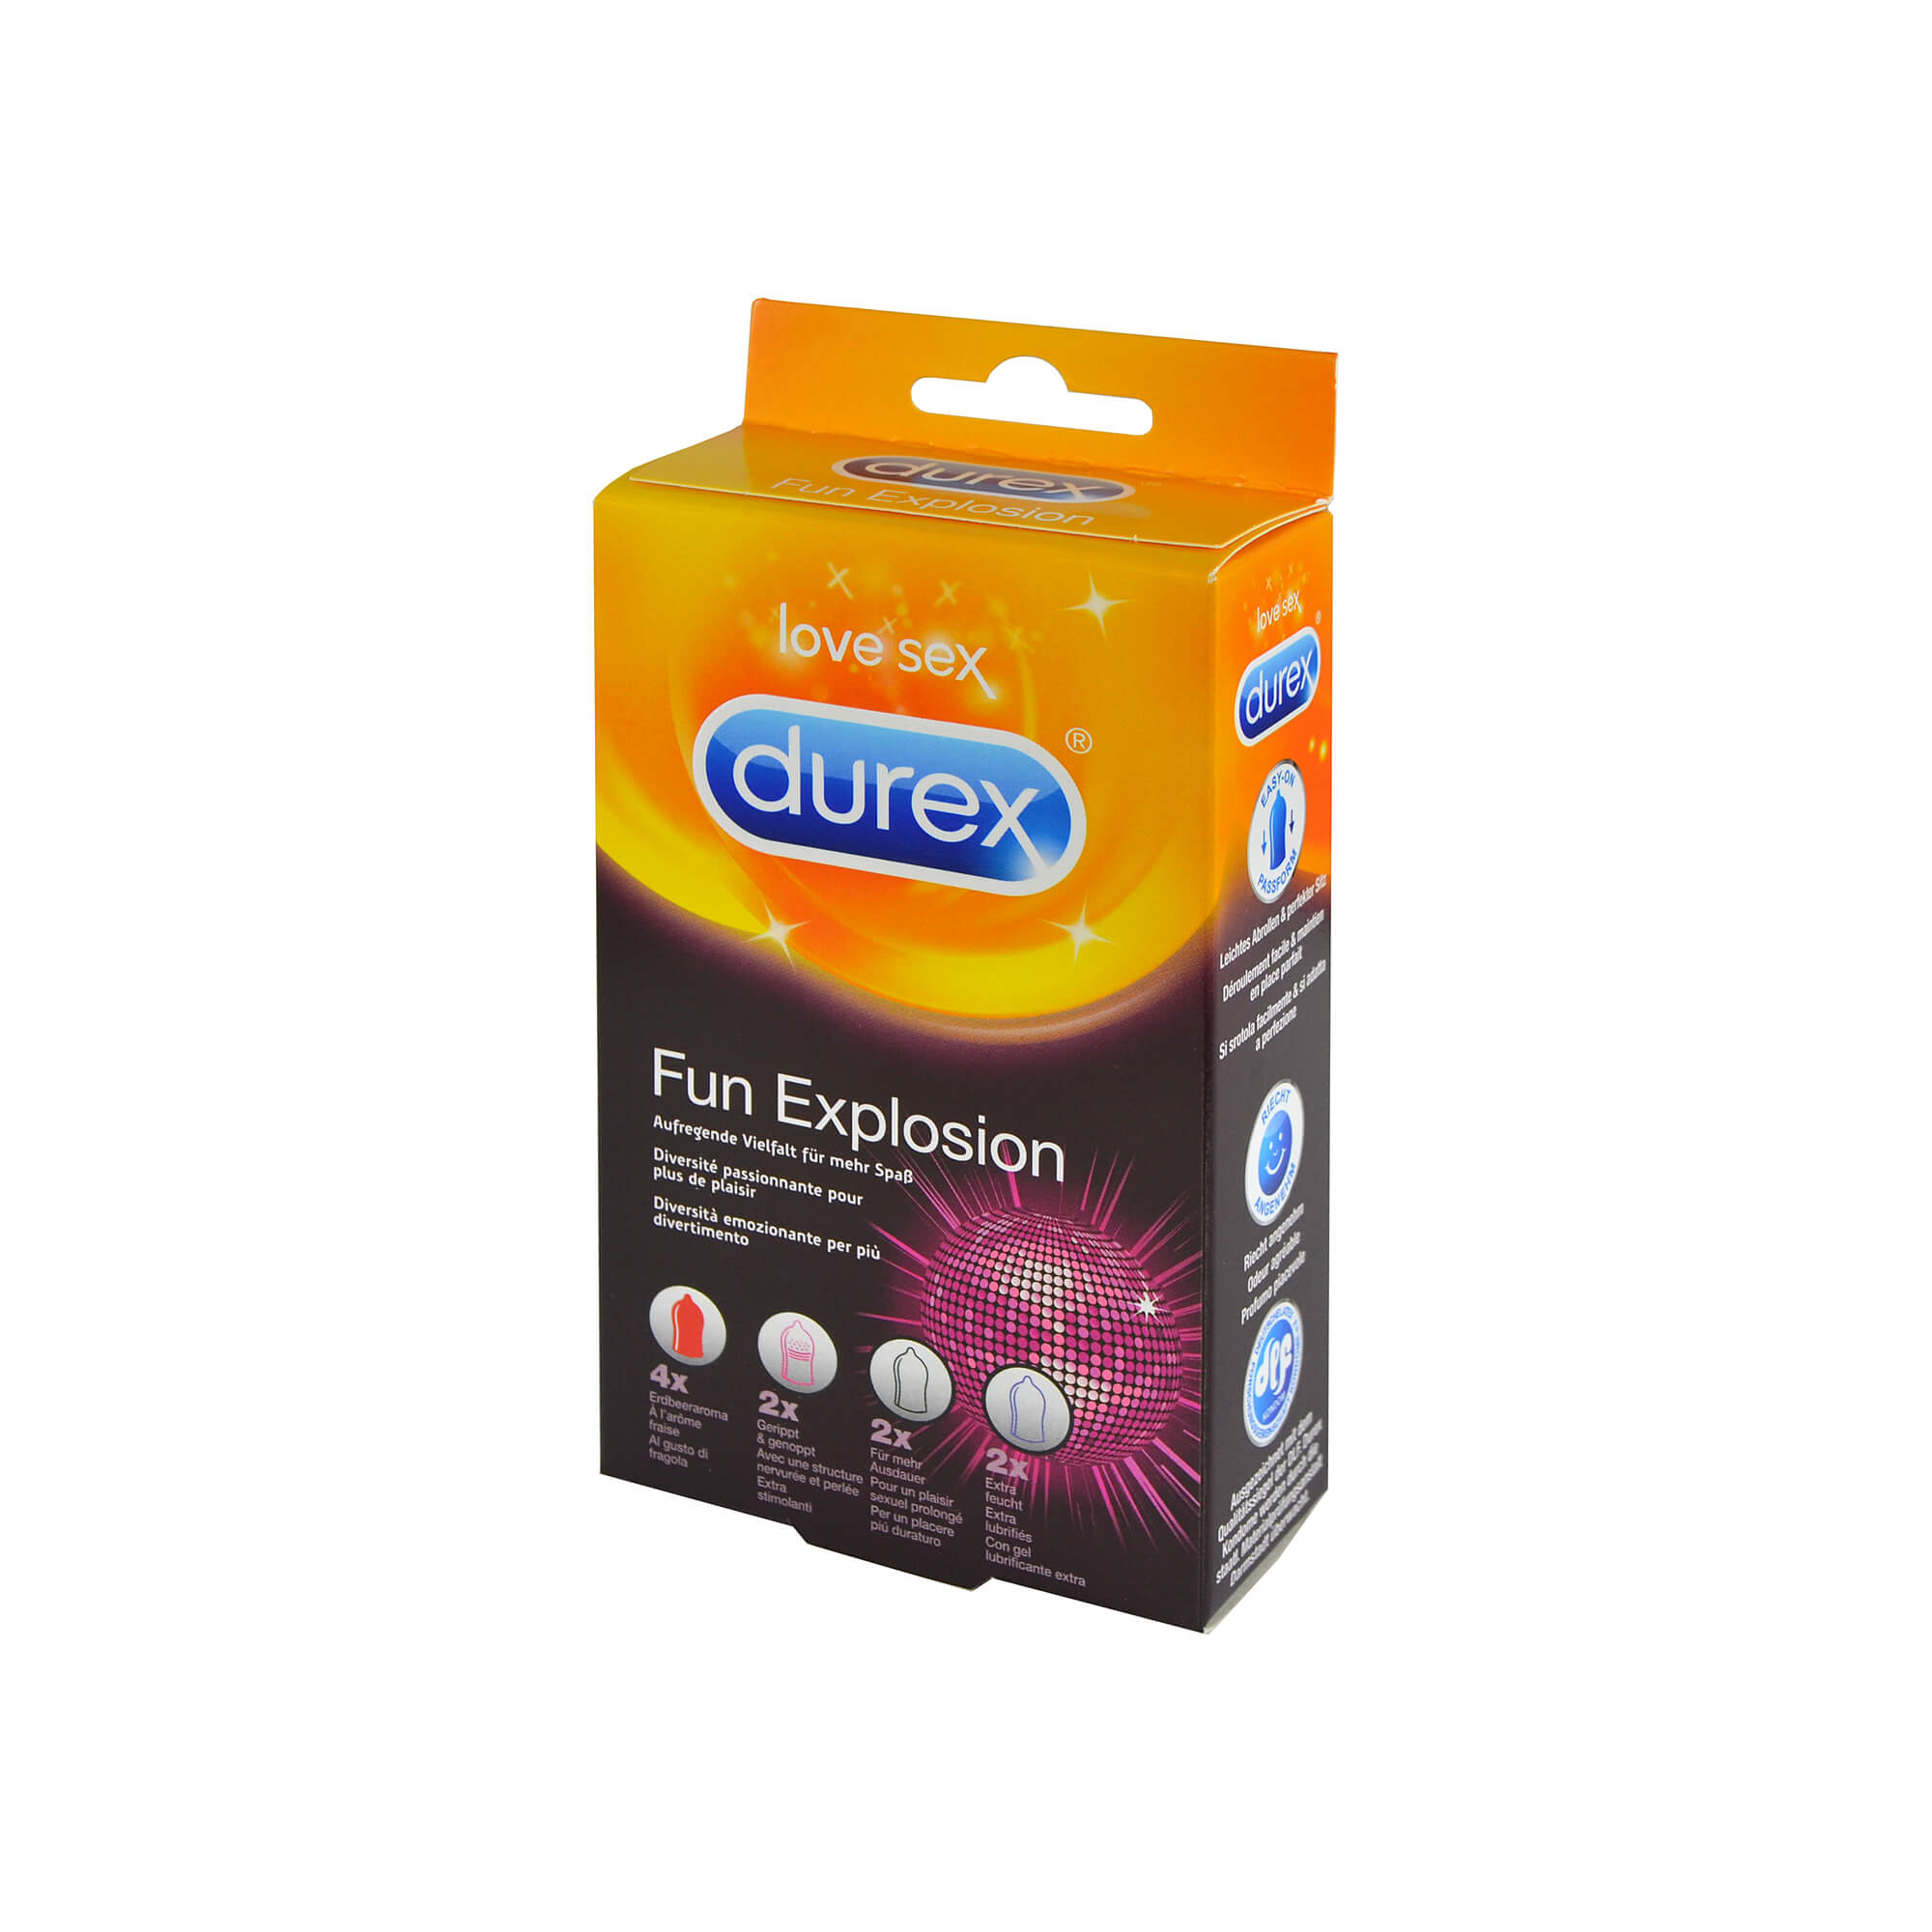 Kondom-Sortiment für bunten, fruchtigen Spaß und heiße Abwechslung.